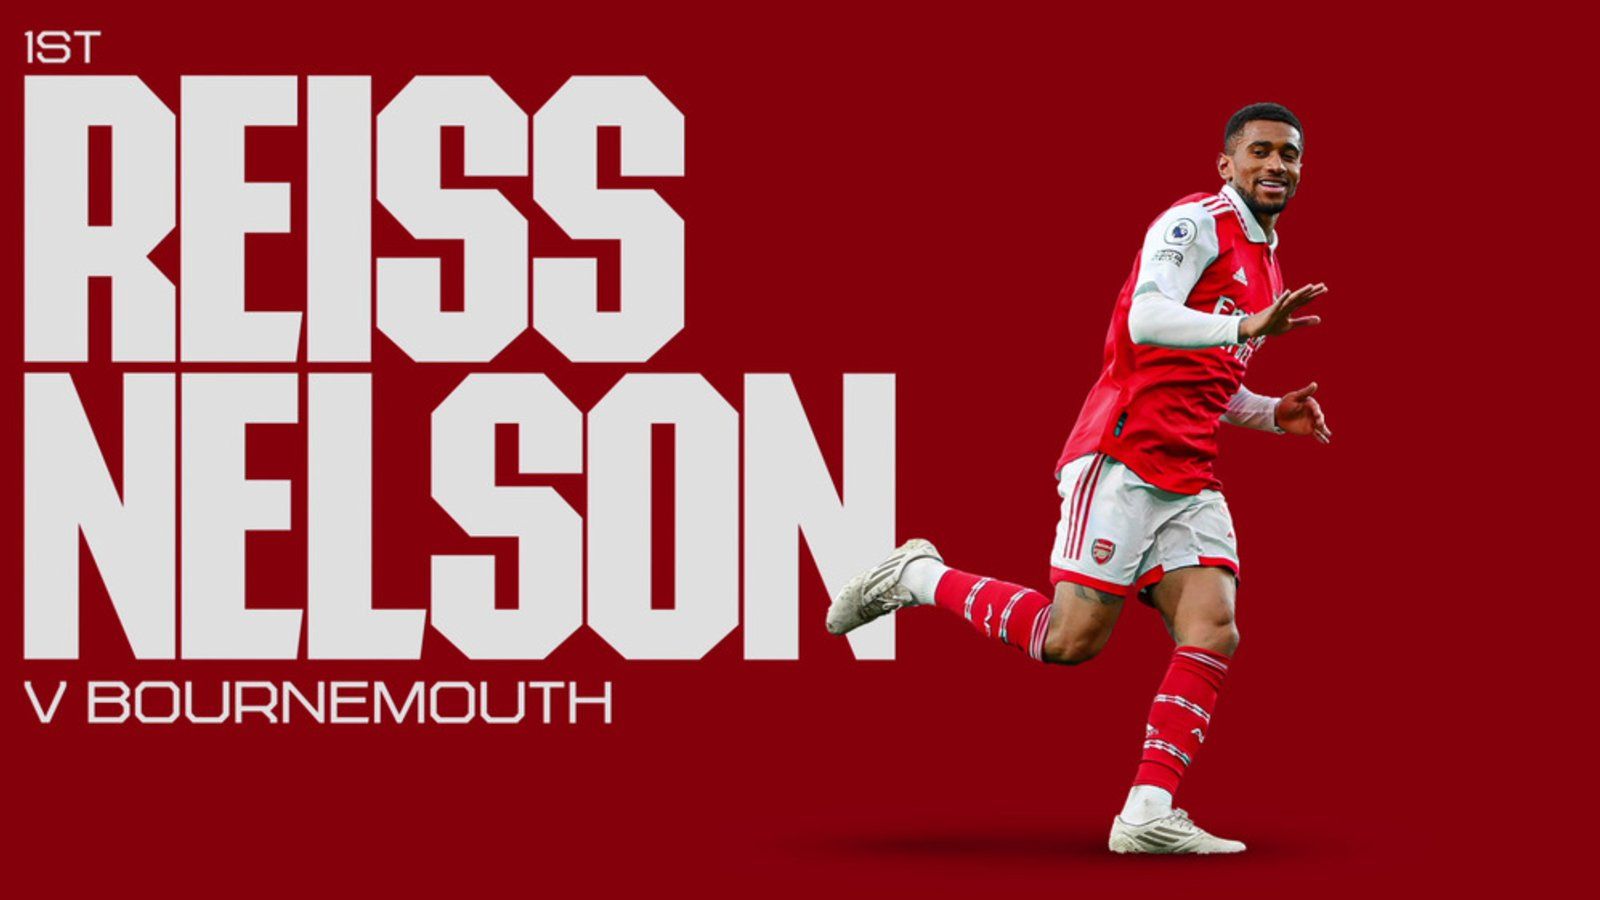 Reiss Nelson wins men's Goal of the Season | News | Arsenal.com